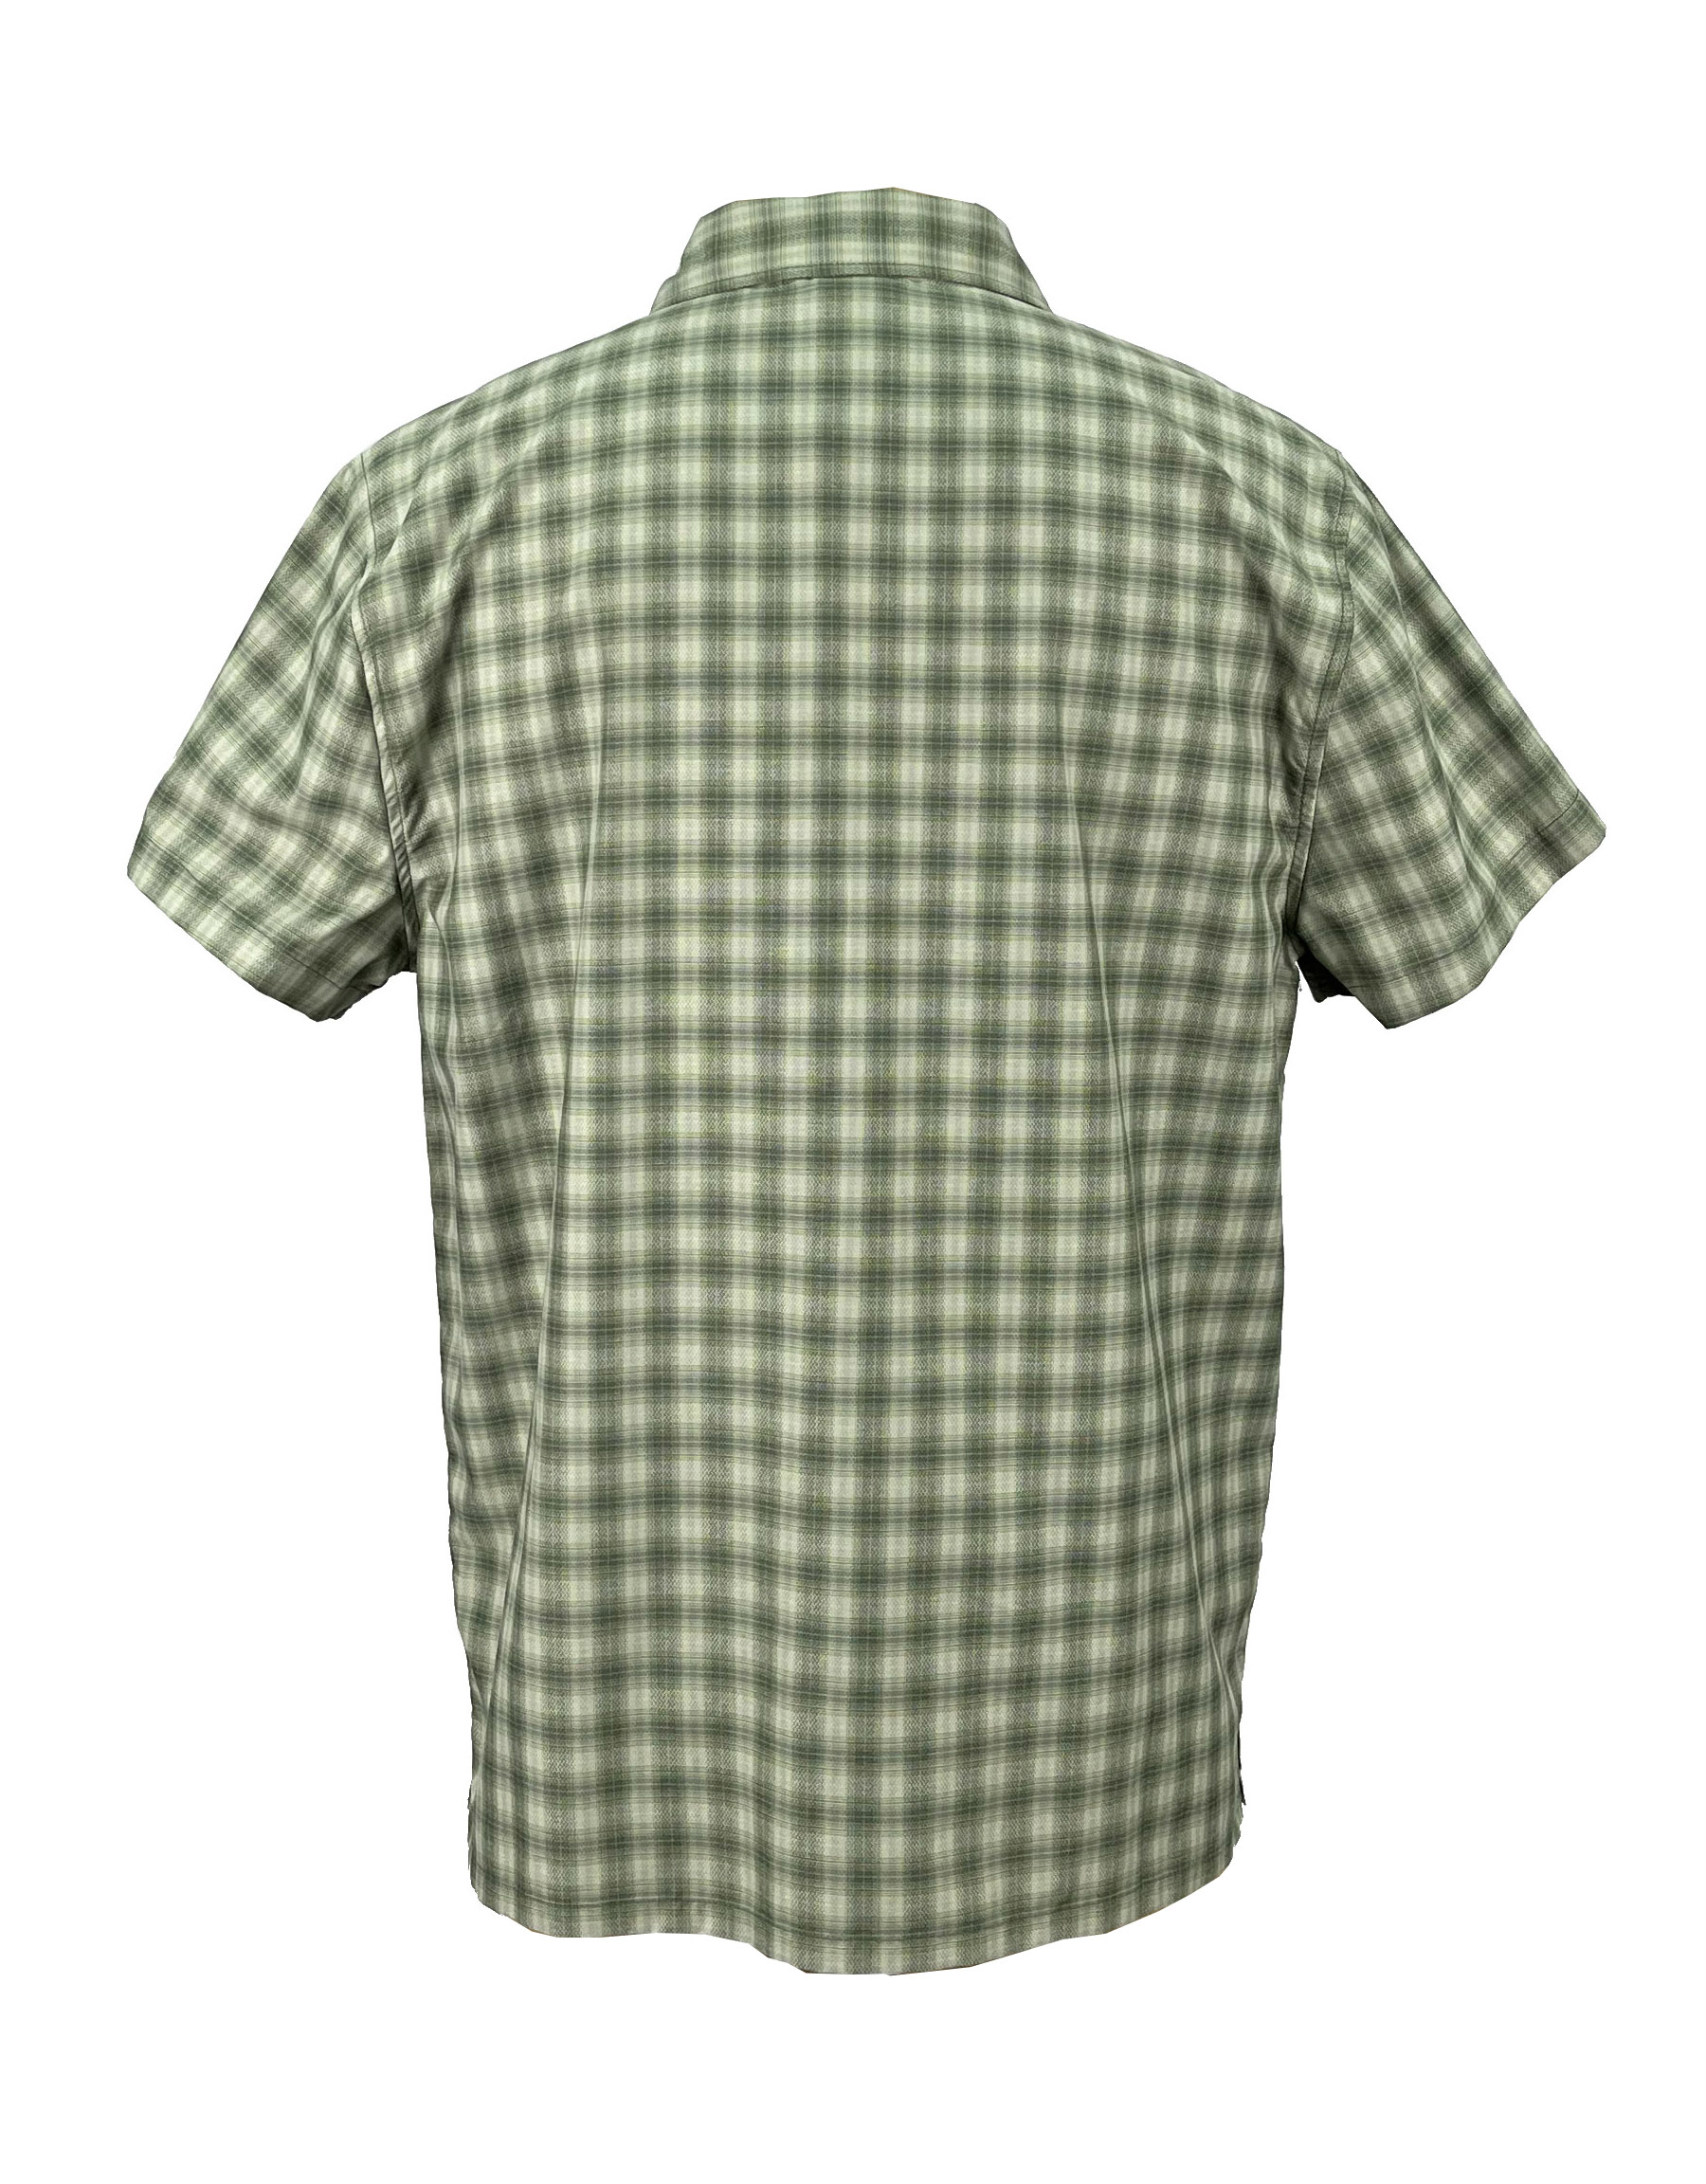 9.chemise (3)